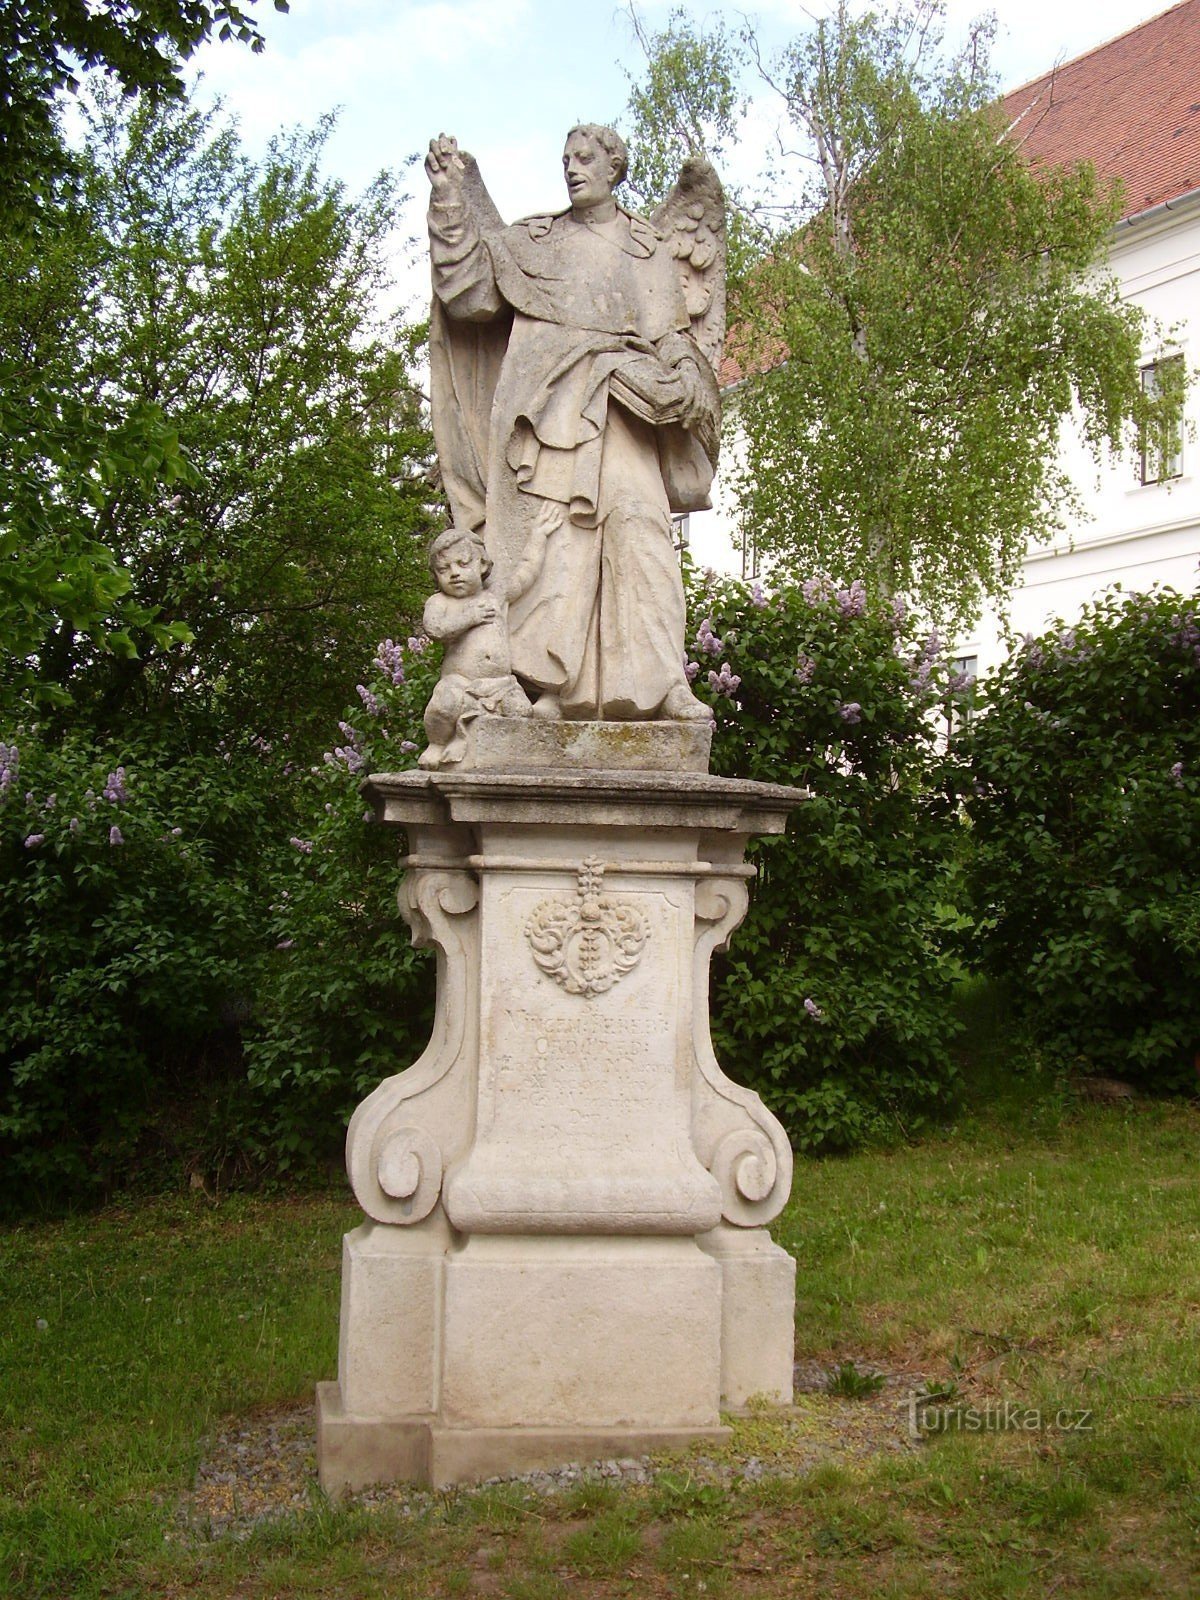 Statue de St. Vincenzo Ferrerský à Rosice près de Brno